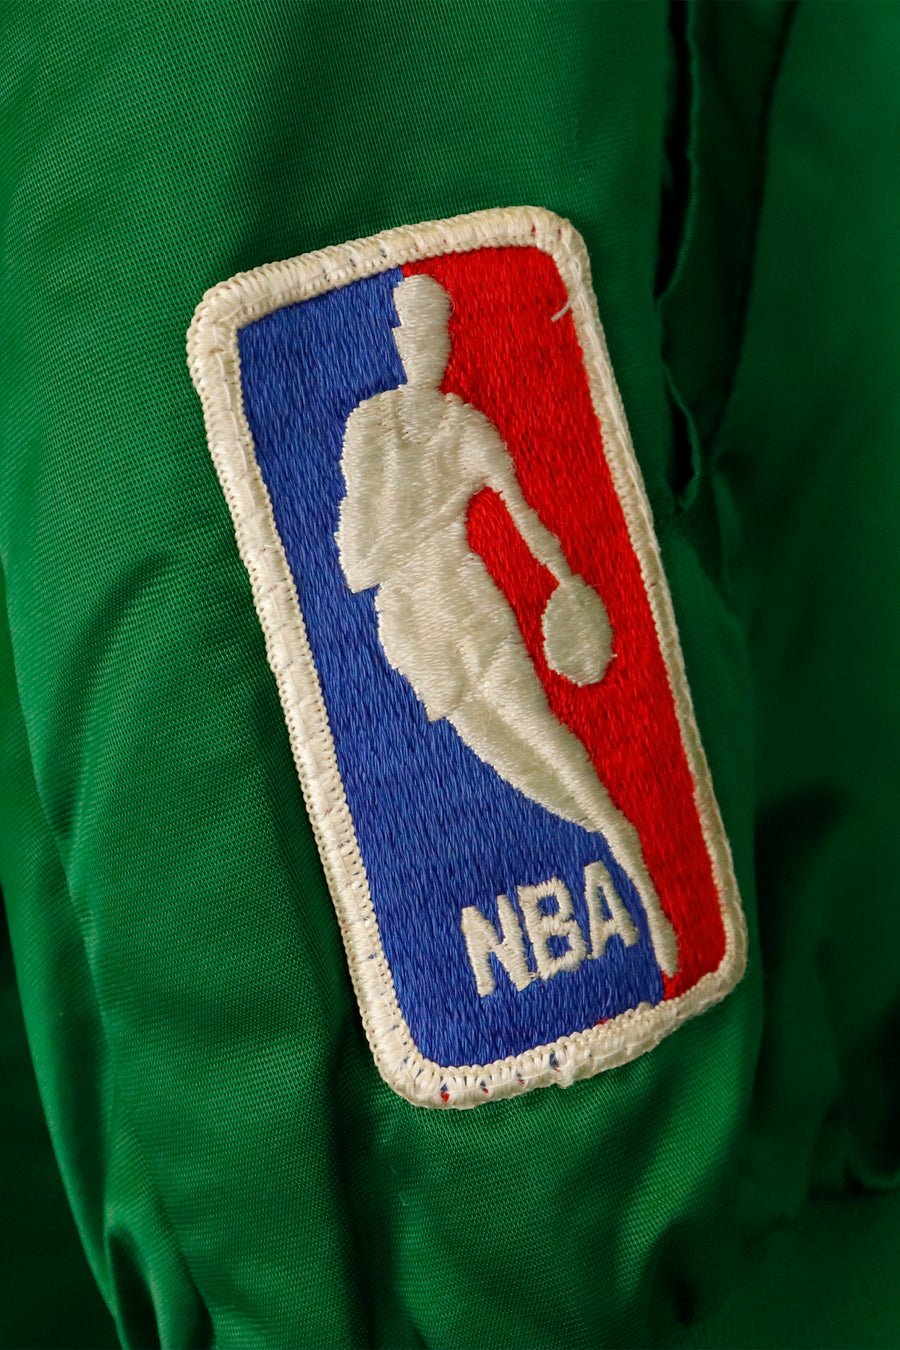 Vintage NBA Boston Celtics Starter Jacket Sz L